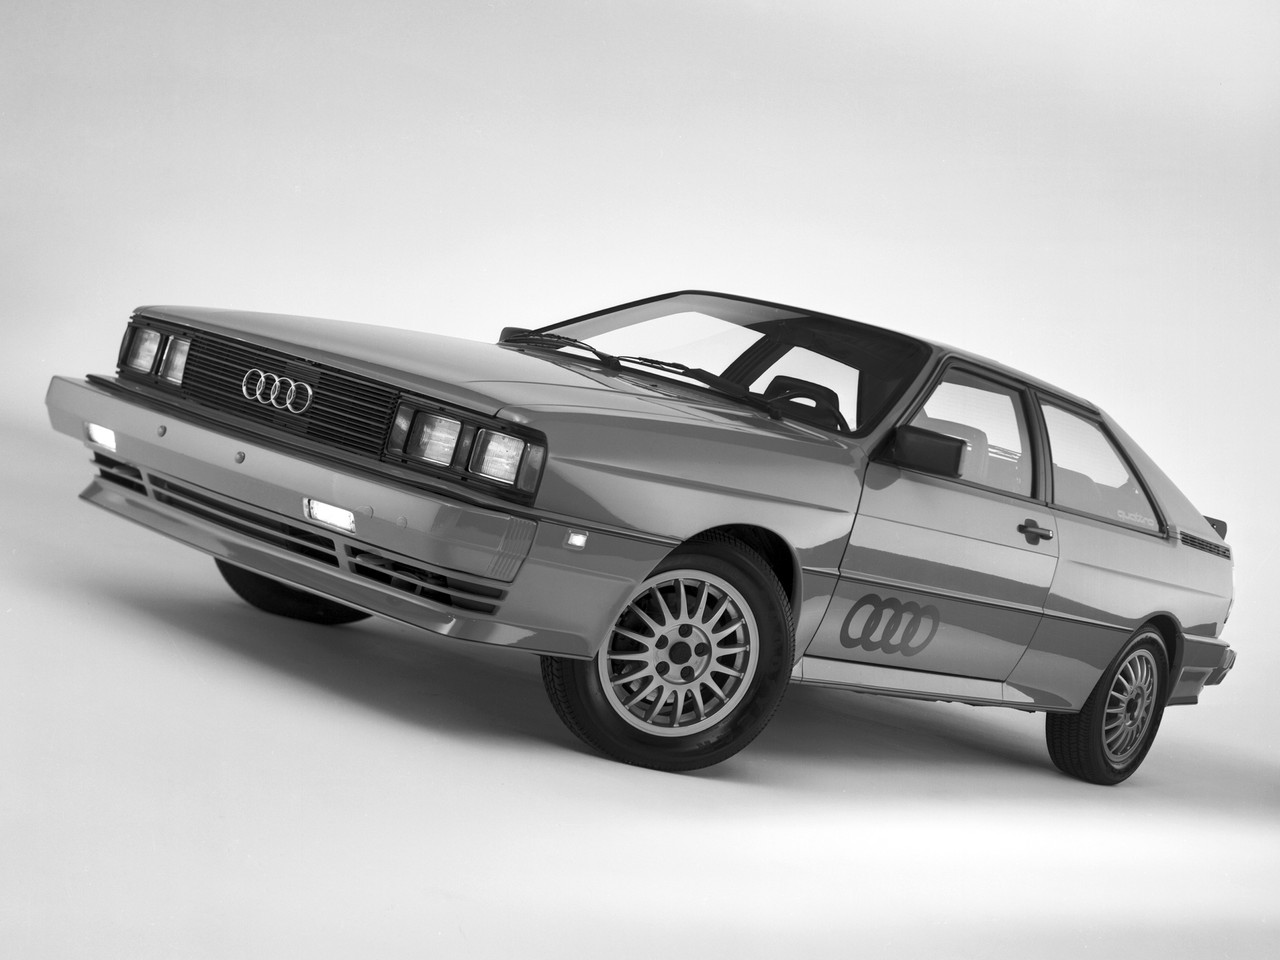 Audi Quattro 1980 года — одна из первых легковушек с полным приводом, которая вошла в моду в том числе благодаря раллийным успехам марки